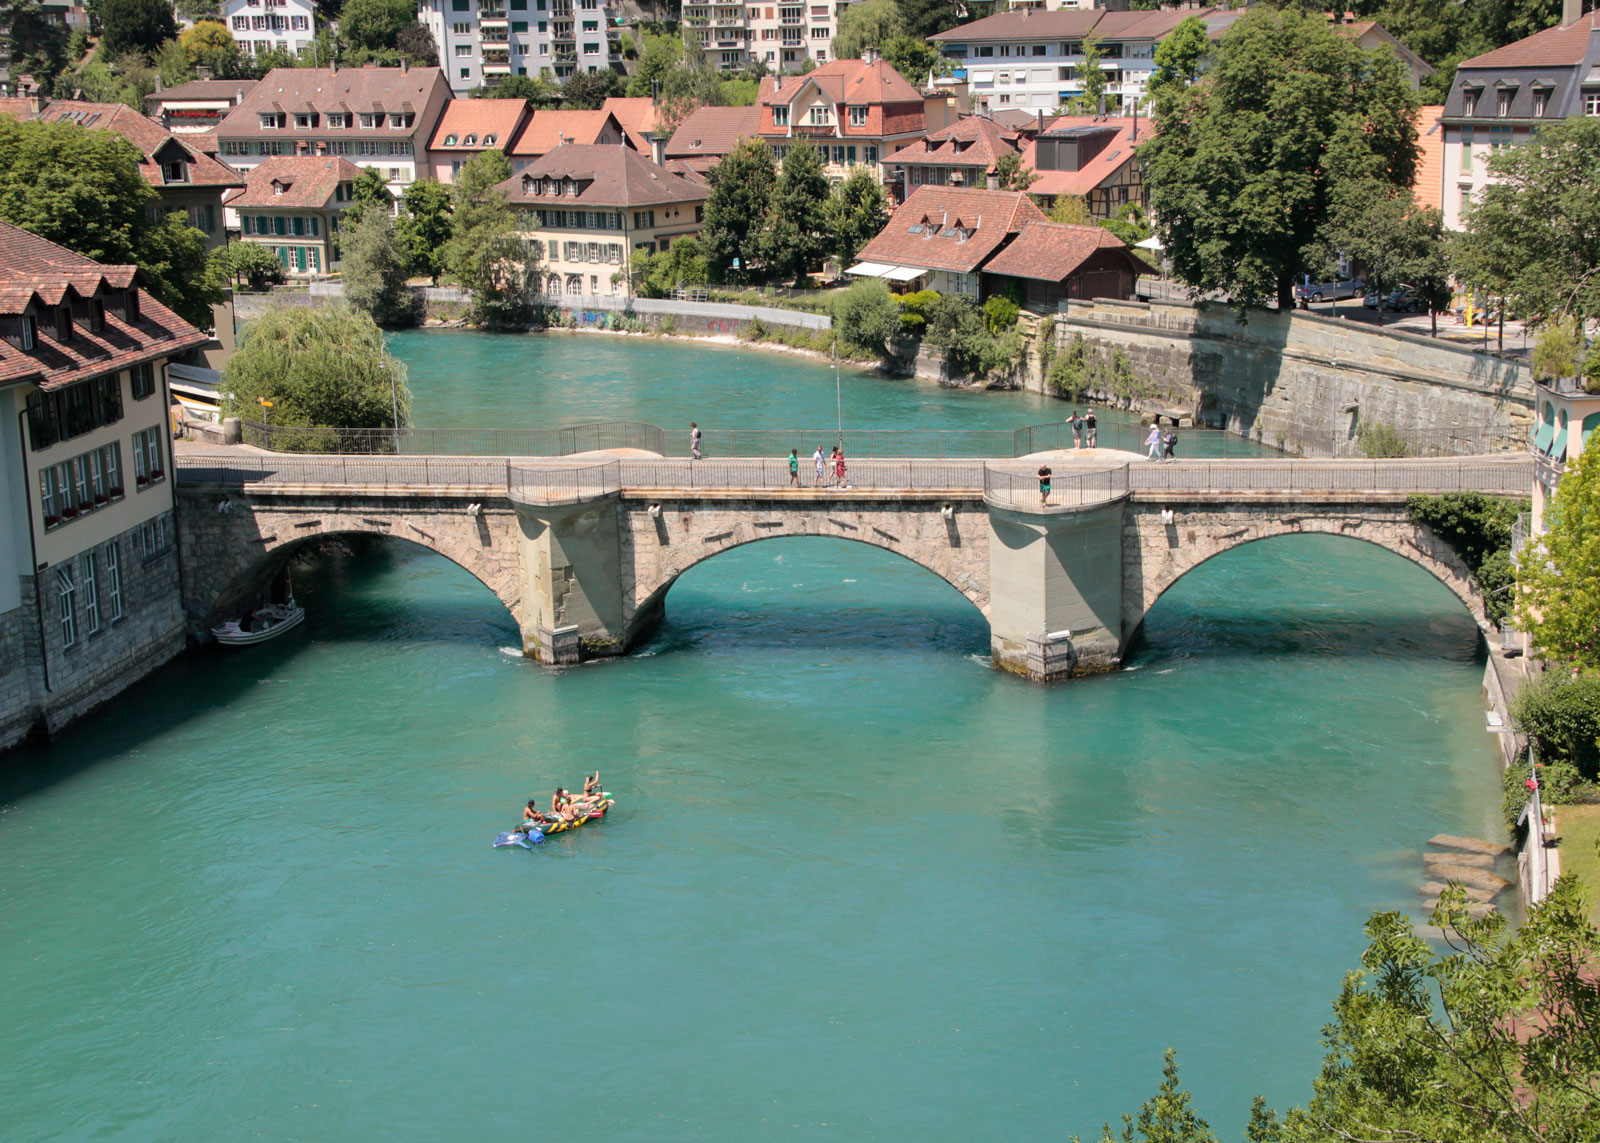 Nach dem Schwellenmätteli geht es auf einem kurzen Abschnitt durch die Berner Altstadt. Die im Bild gezeigte Untertorbrücke wurde im Spätmittelalter errichtet und gehört zu den ältesten Steinbrücken der Schweiz